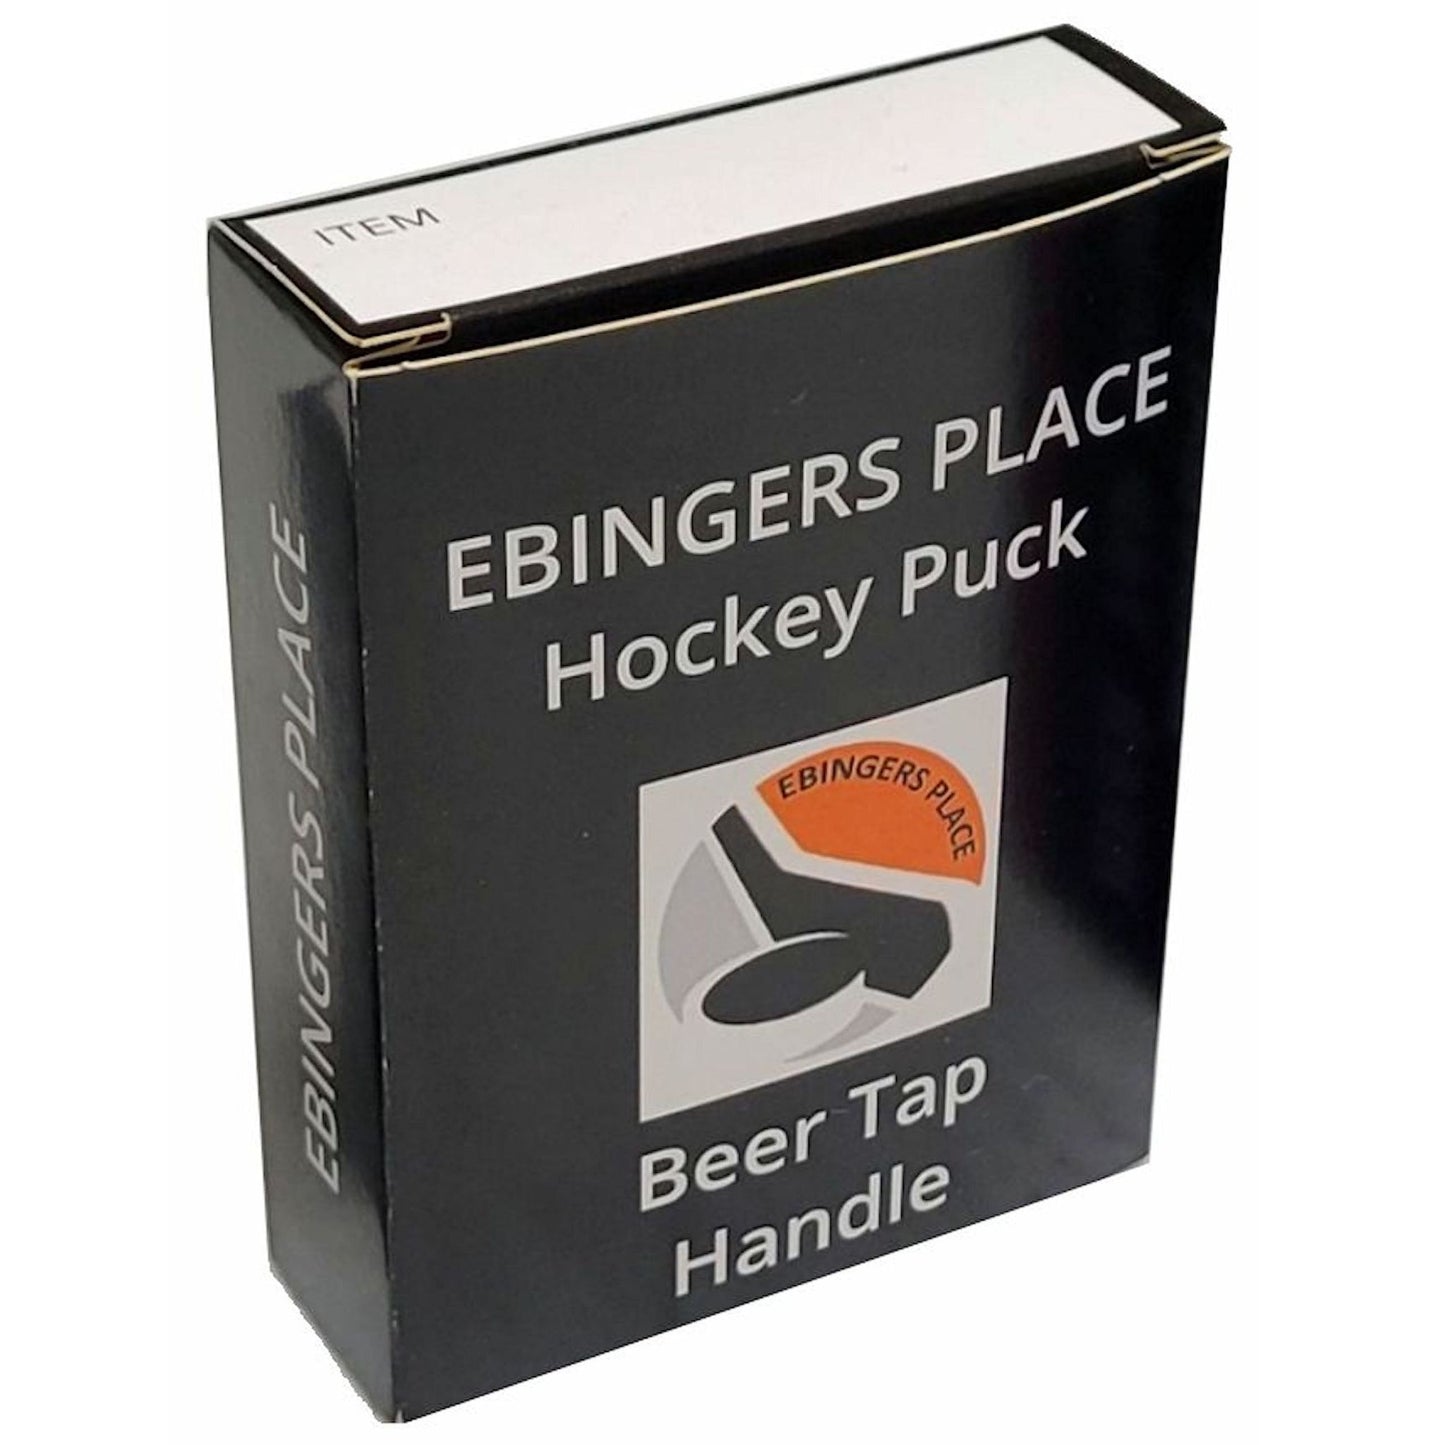 Detroit Red Wings Steve Yzerman Player Series Hockey Puck Beer Tap Handle